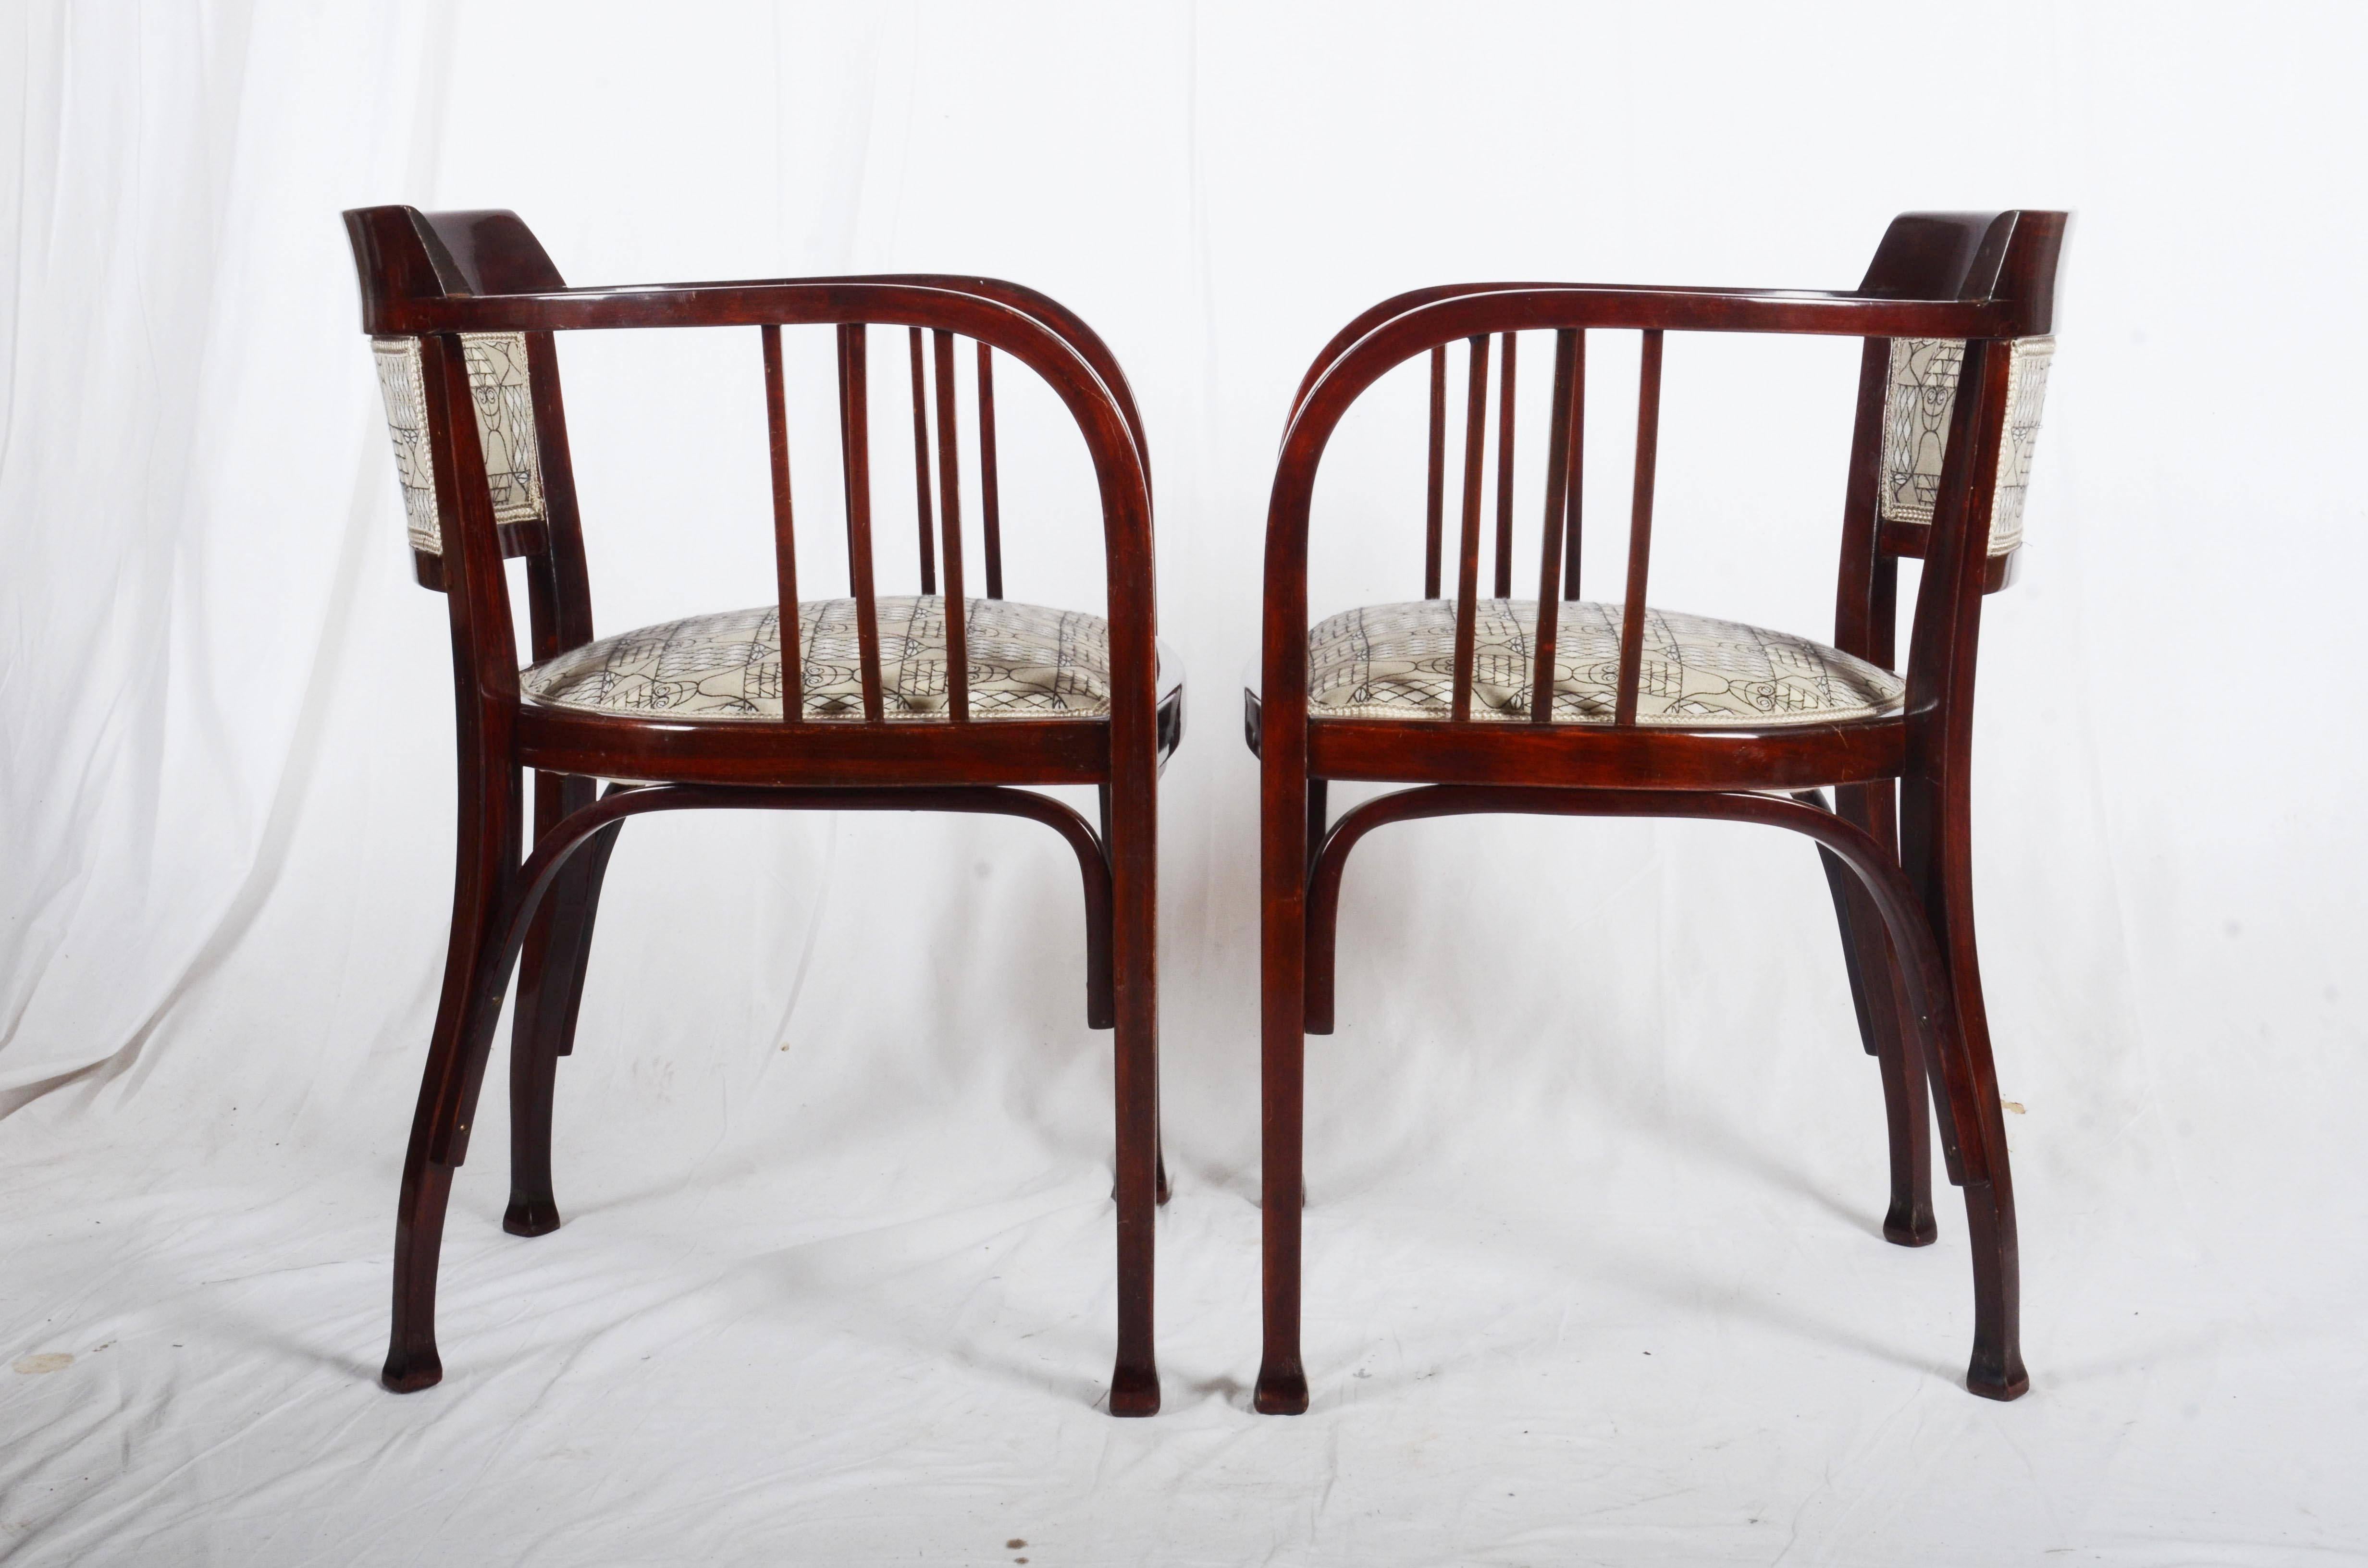 Strand-Bugholzentwurf von Otto Wagner um 1900
Der Stoff auf den Stühlen ist veraltet, aber ich kann Ihnen stattdessen eine große Auswahl an Vienna Secession Stoffen anbieten.
Lieferfrist 5-6 Wochen

 